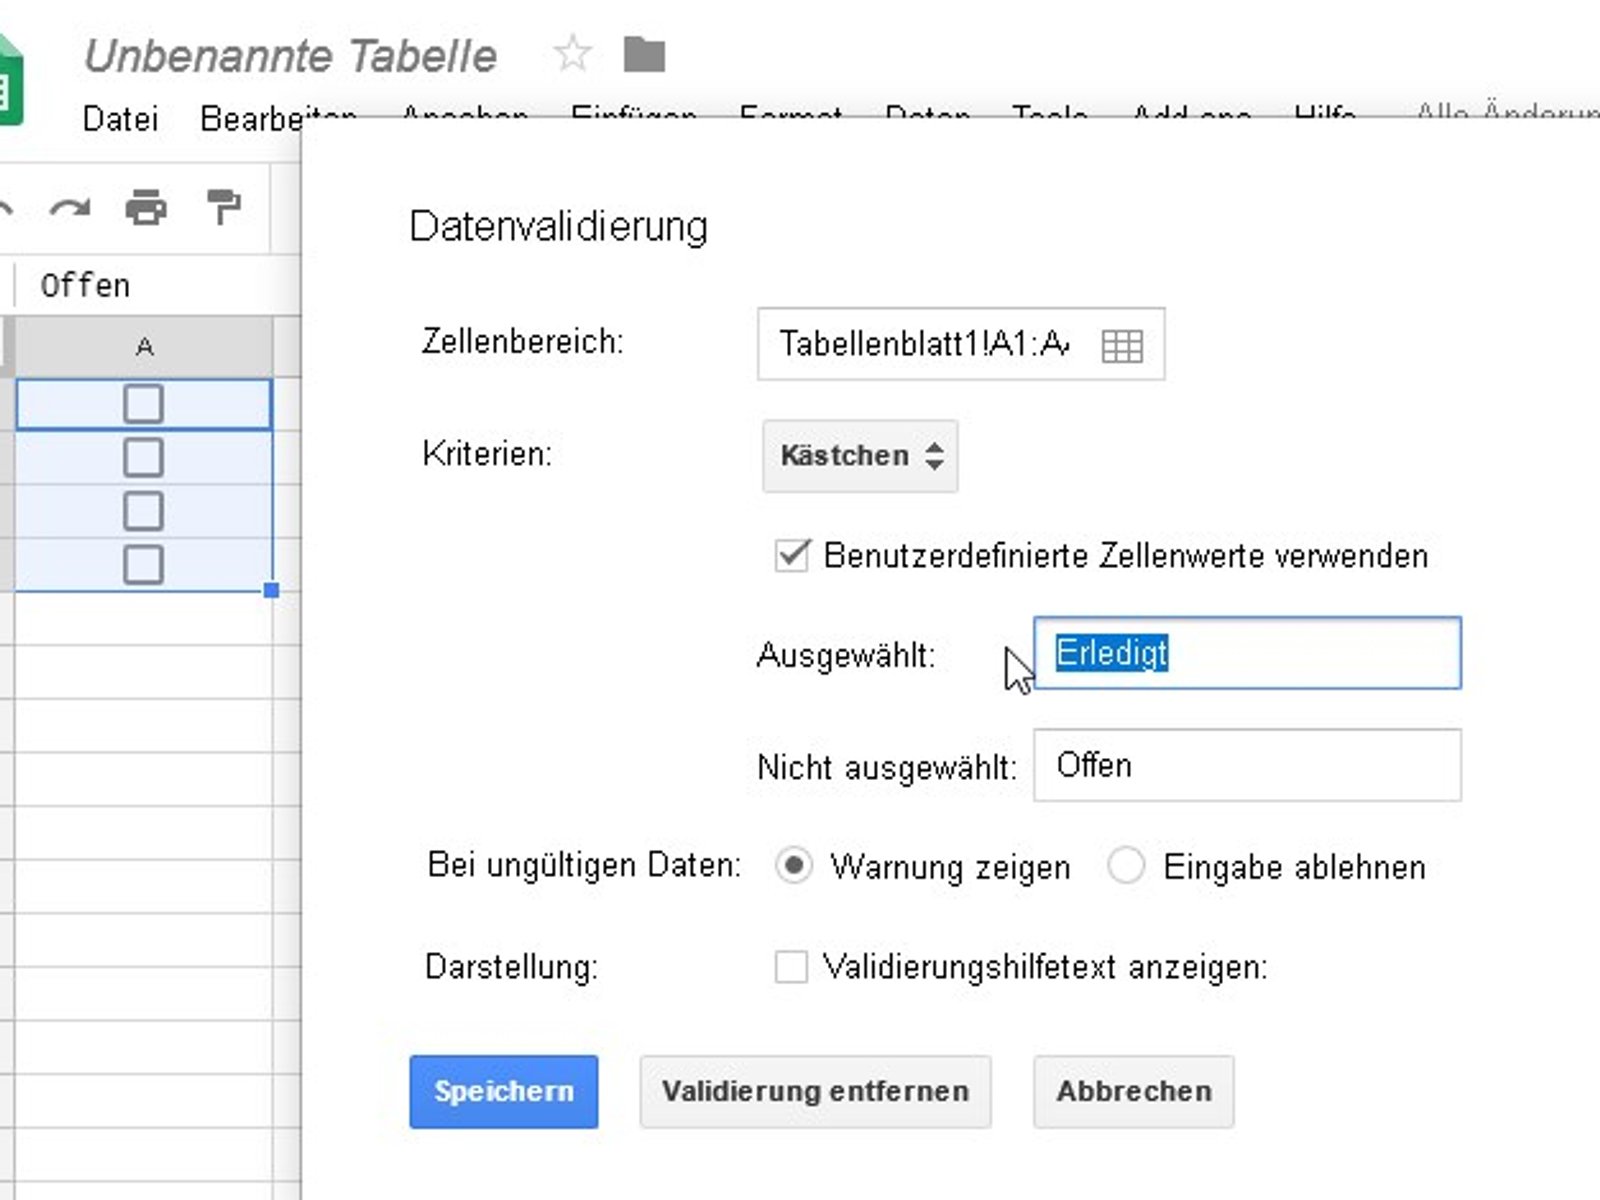 Wie kan man in ner google tabelle nen unterpunkt einfügen - Deutschland